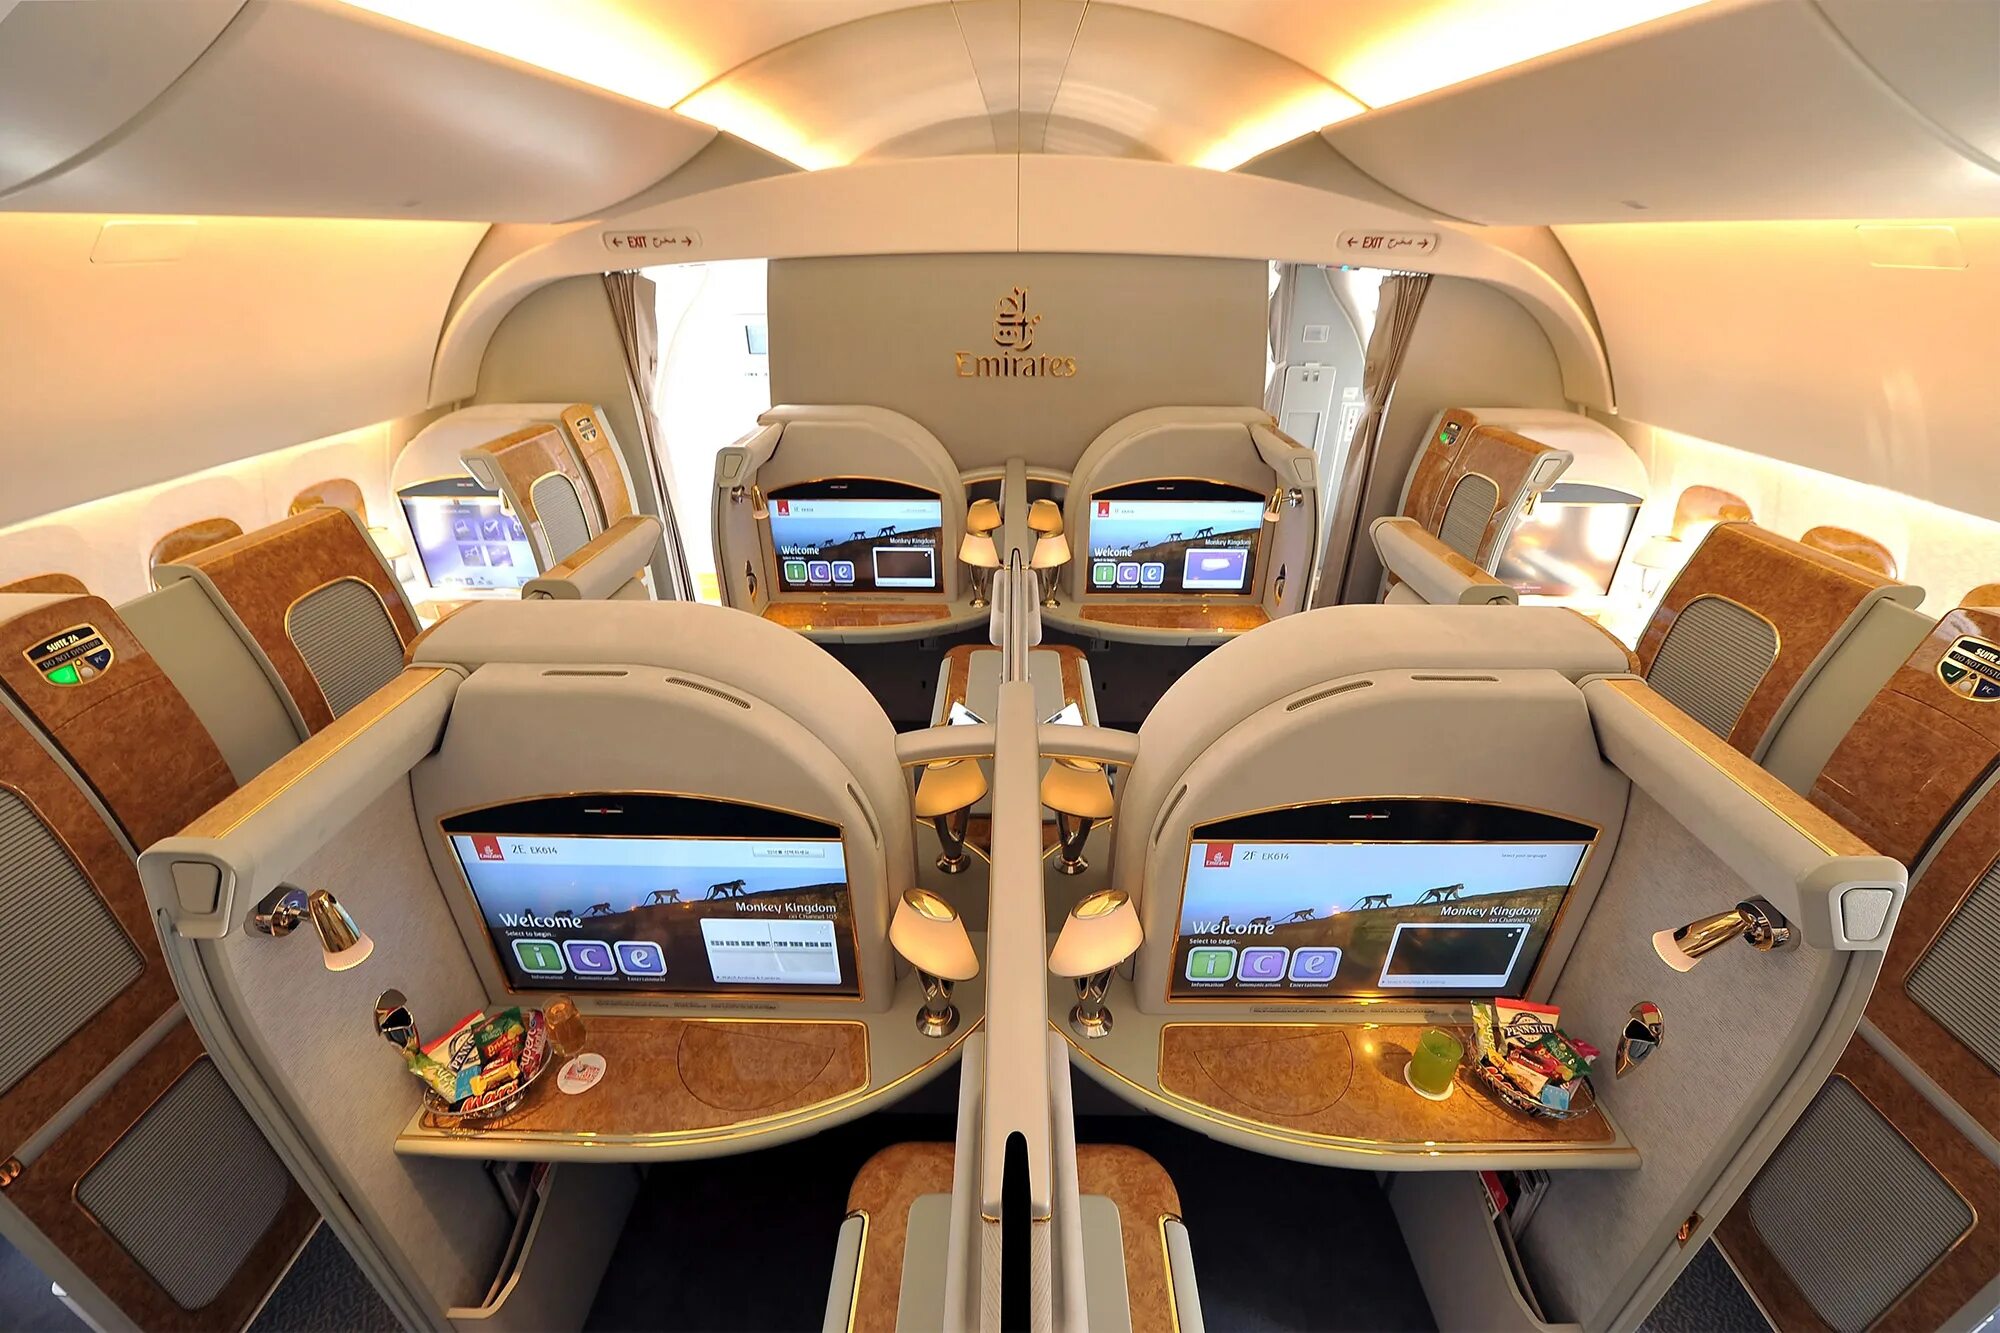 First class отзывы. Airbus a380 Emirates первый класс. Самолет Emirates a380 салон. Airbus a380 Emirates салон. Первый класс Emirates a380.